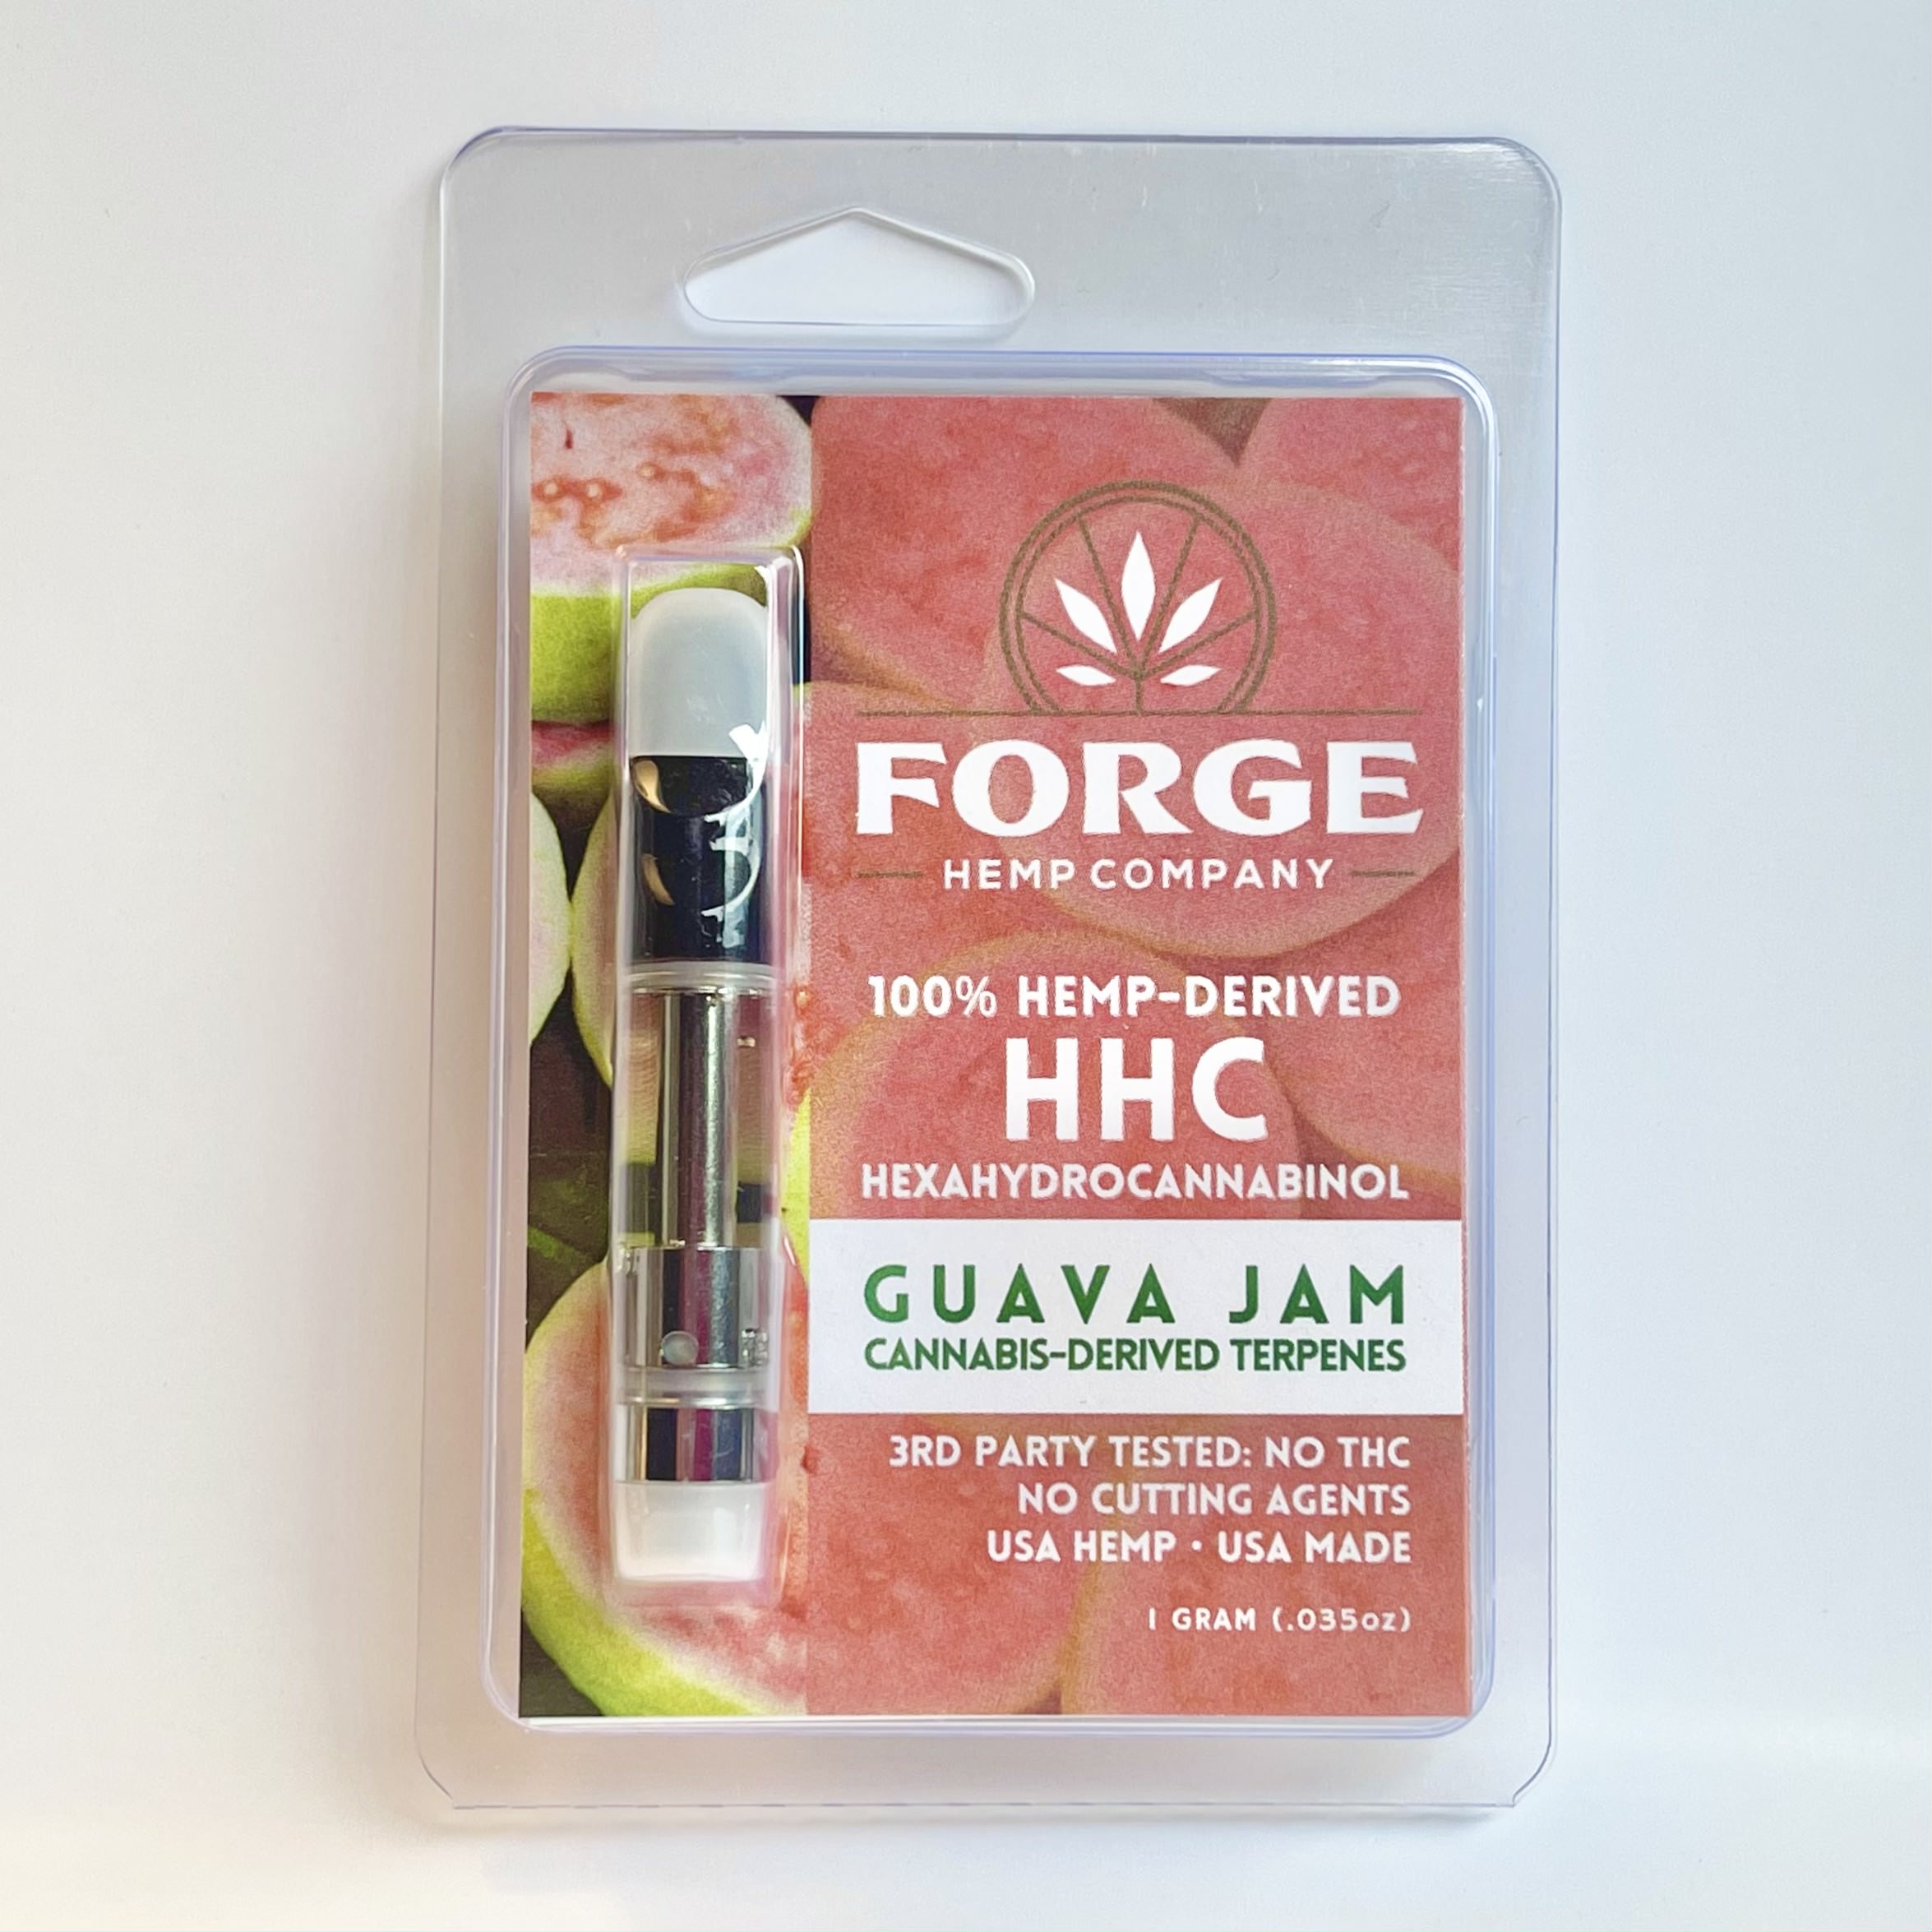 1 gram HHC with Guava Jam terpenes